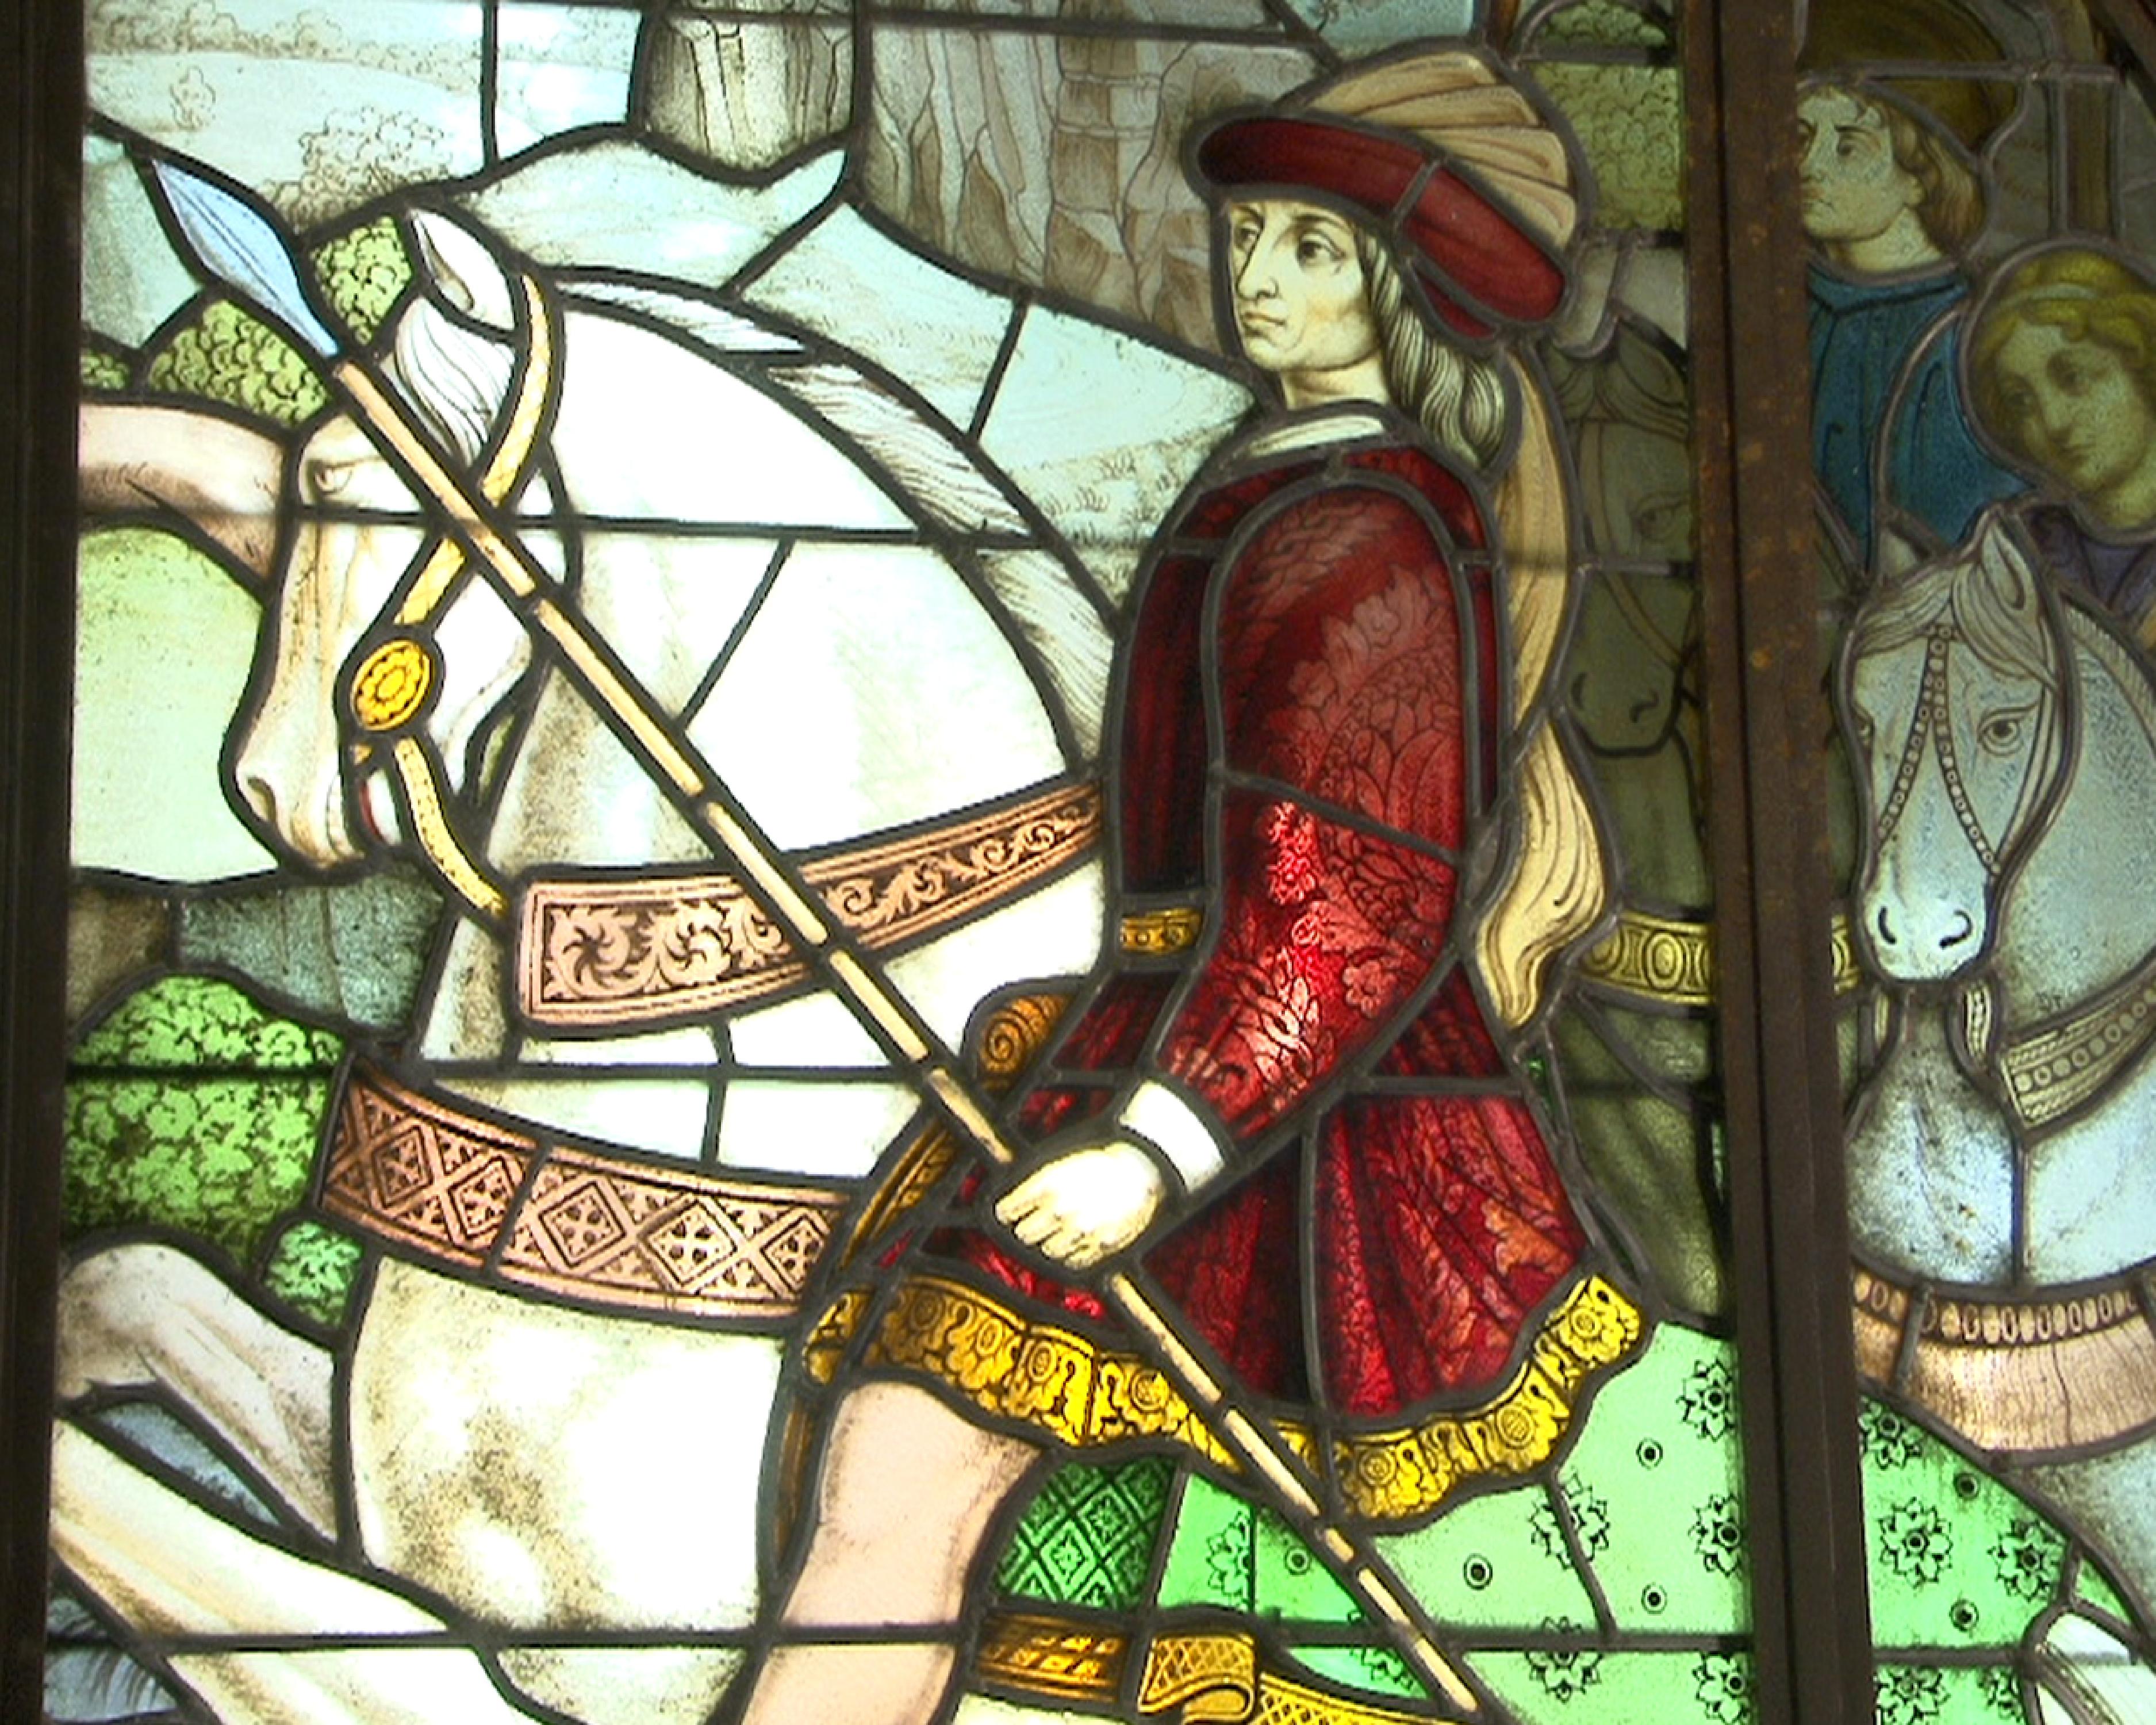 Dieses große Glasfenster im neugotischen Stil zeigt eine große Jagdszene mit zwei Männern auf ihren Pferden, die Hirsche jagen. Beide Männer, wohlhabende Knappen, tragen mittelalterliche Kostüme, wie bestickte Tunika, Federhut und lange Sporen. Ein